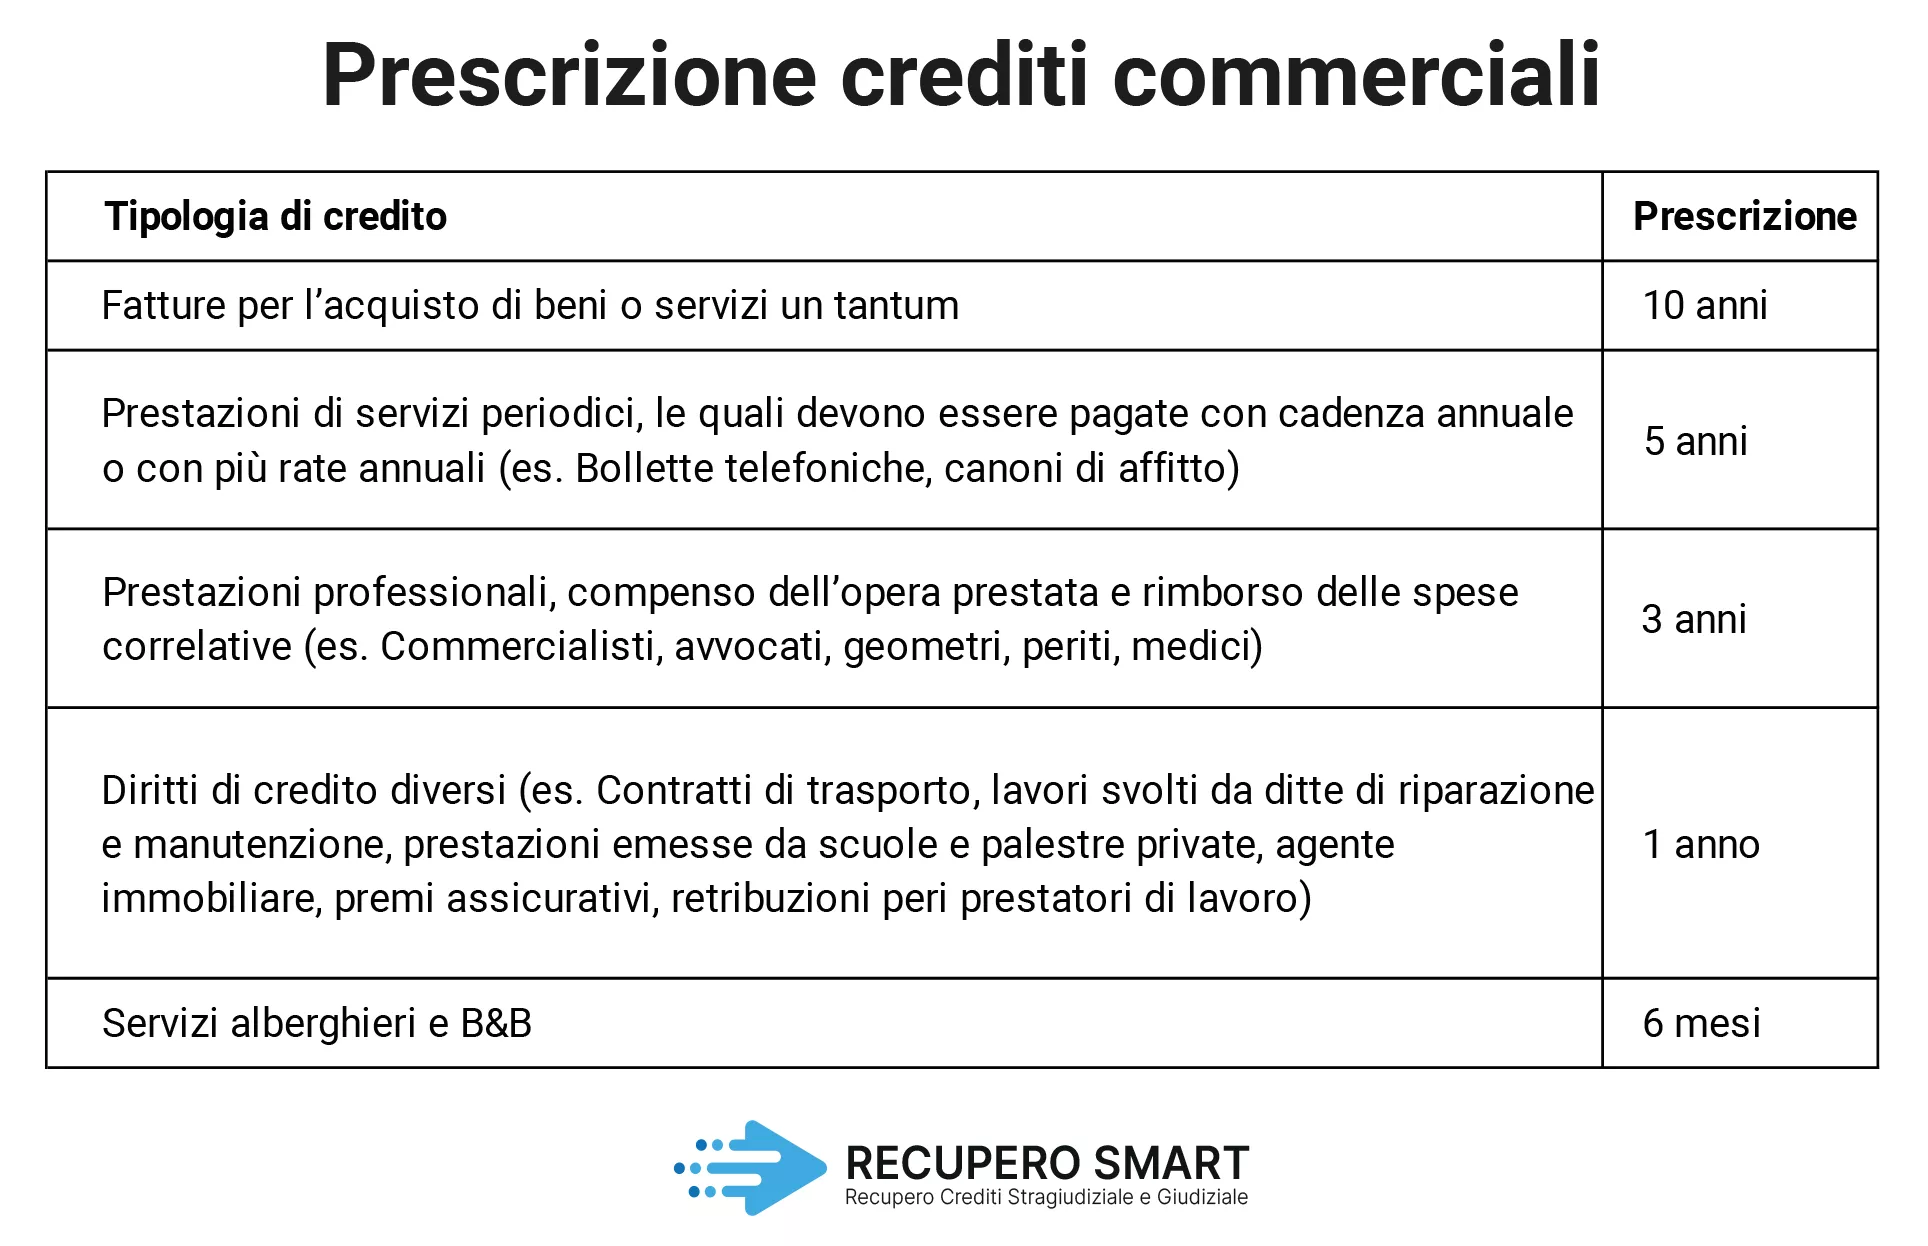 Prescrizione crediti - Recupero Smart